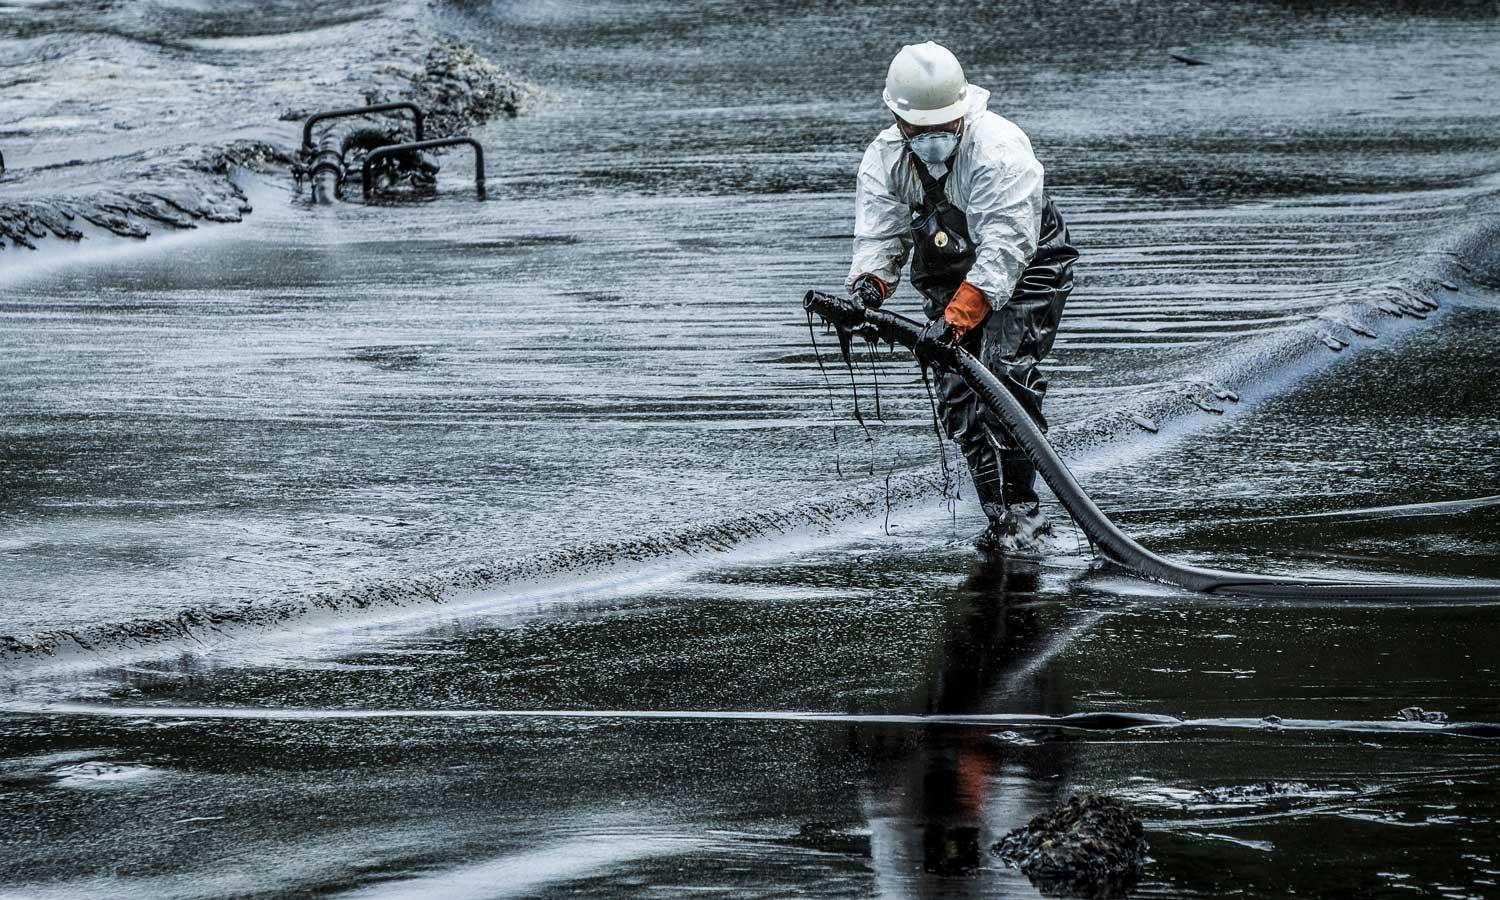 An oil spill